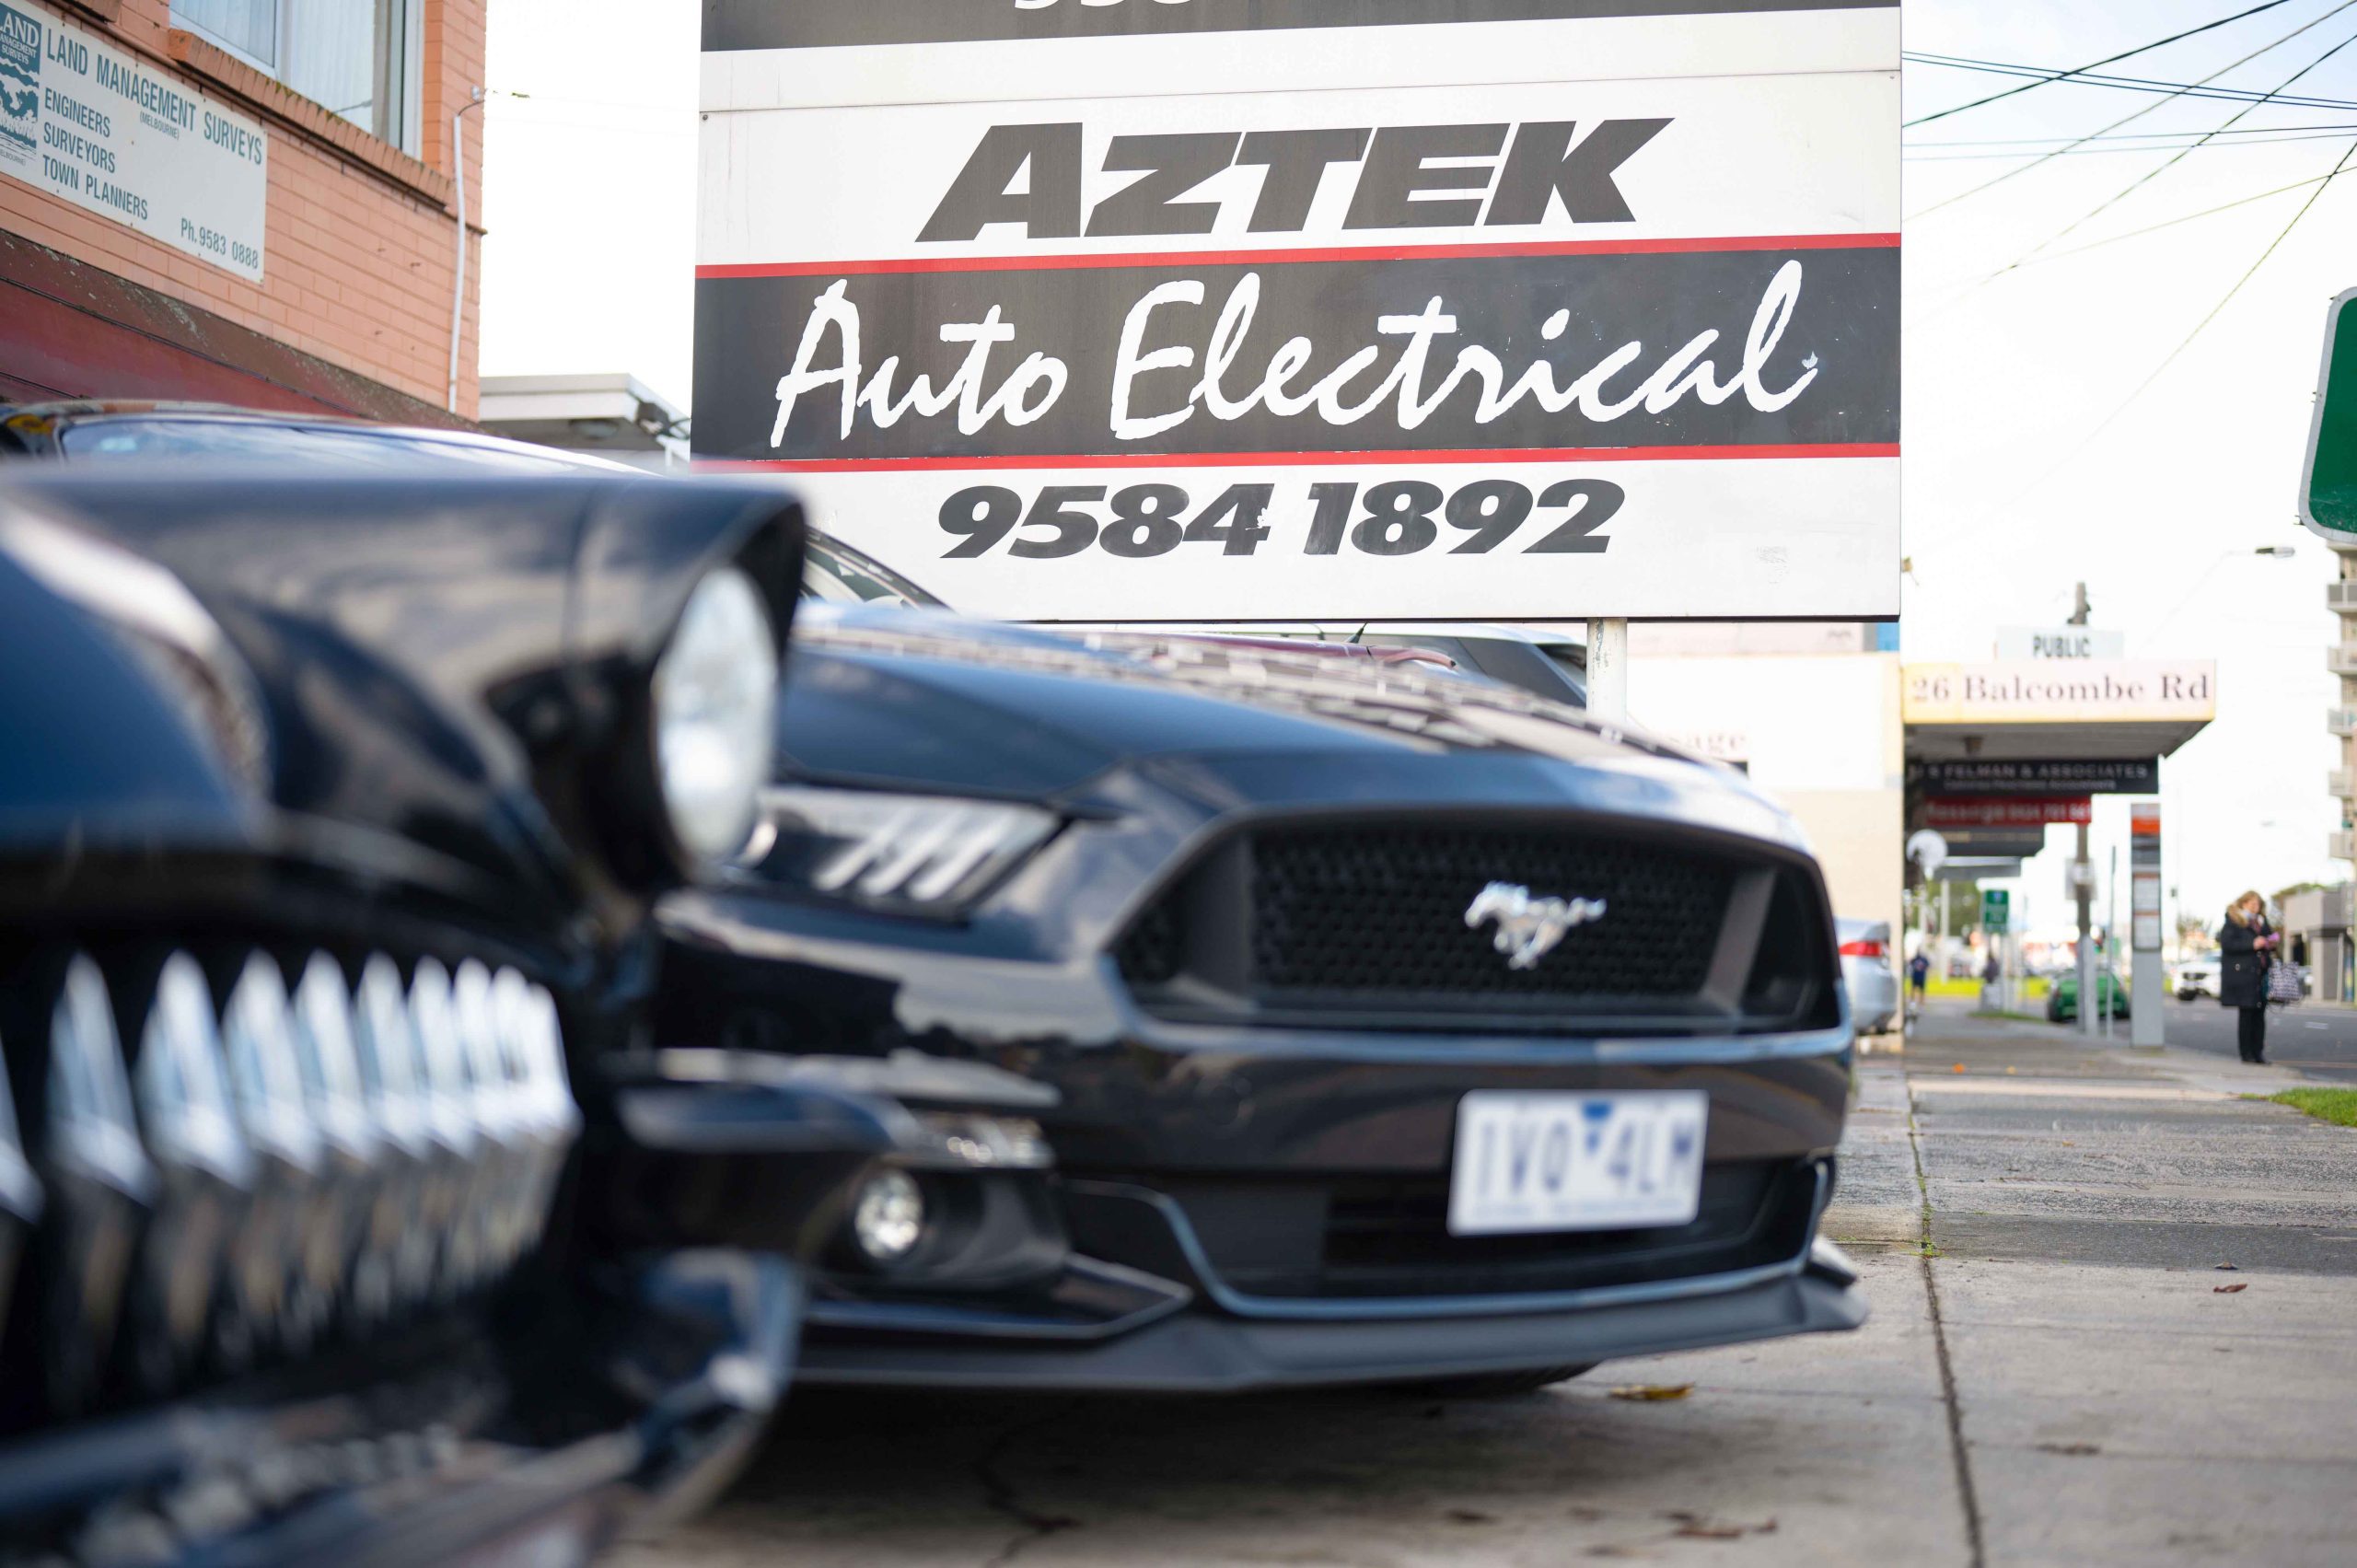 Aztek Automotive Eletrical